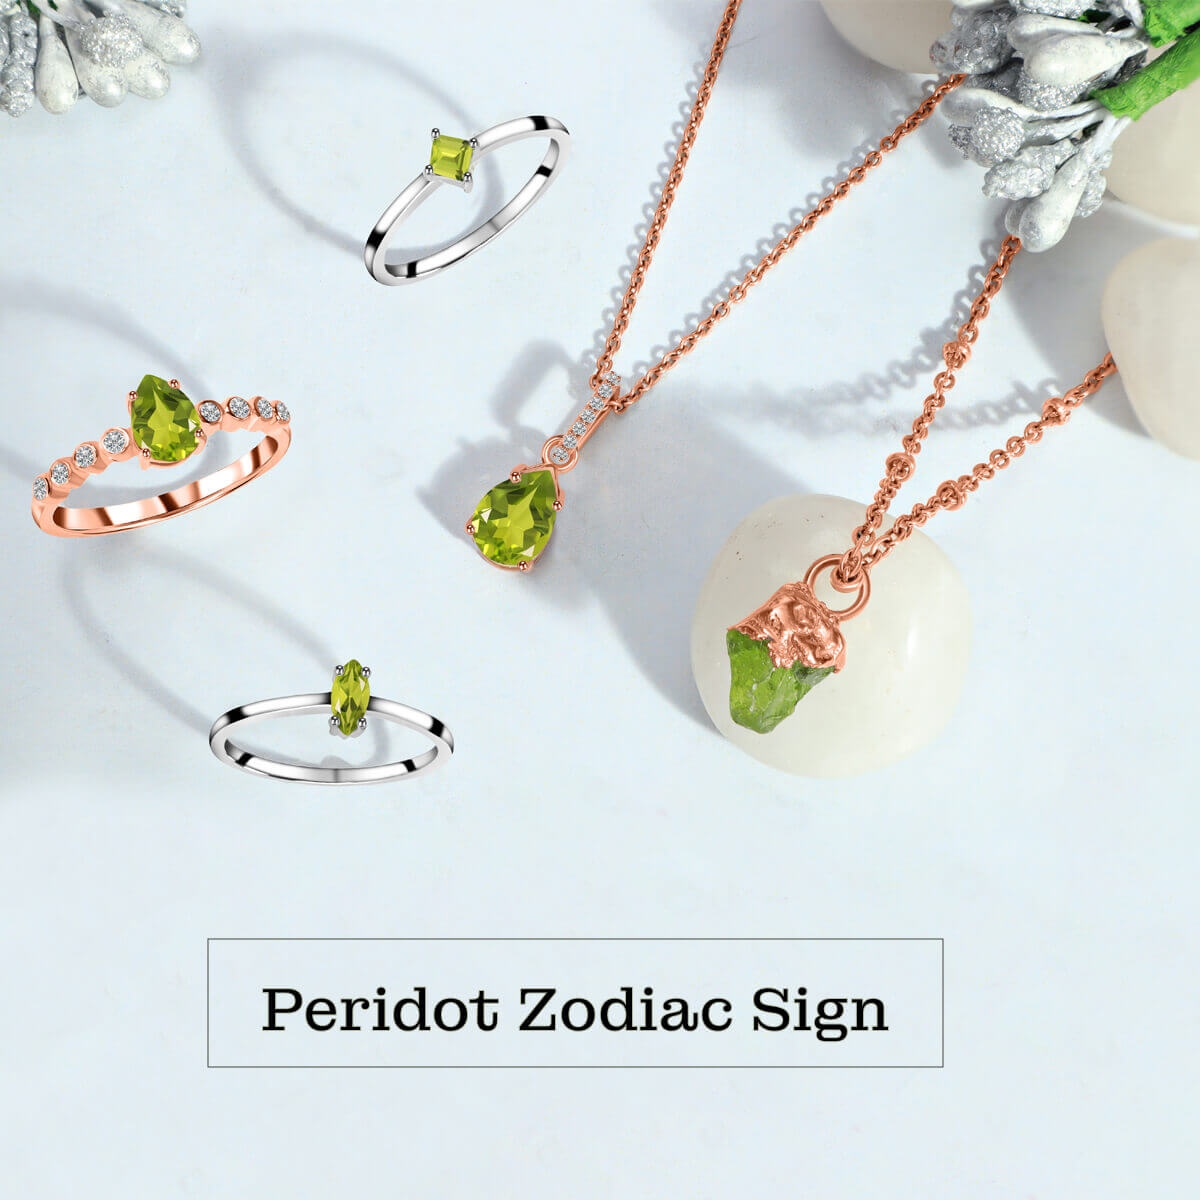 Peridot Zodiac sign